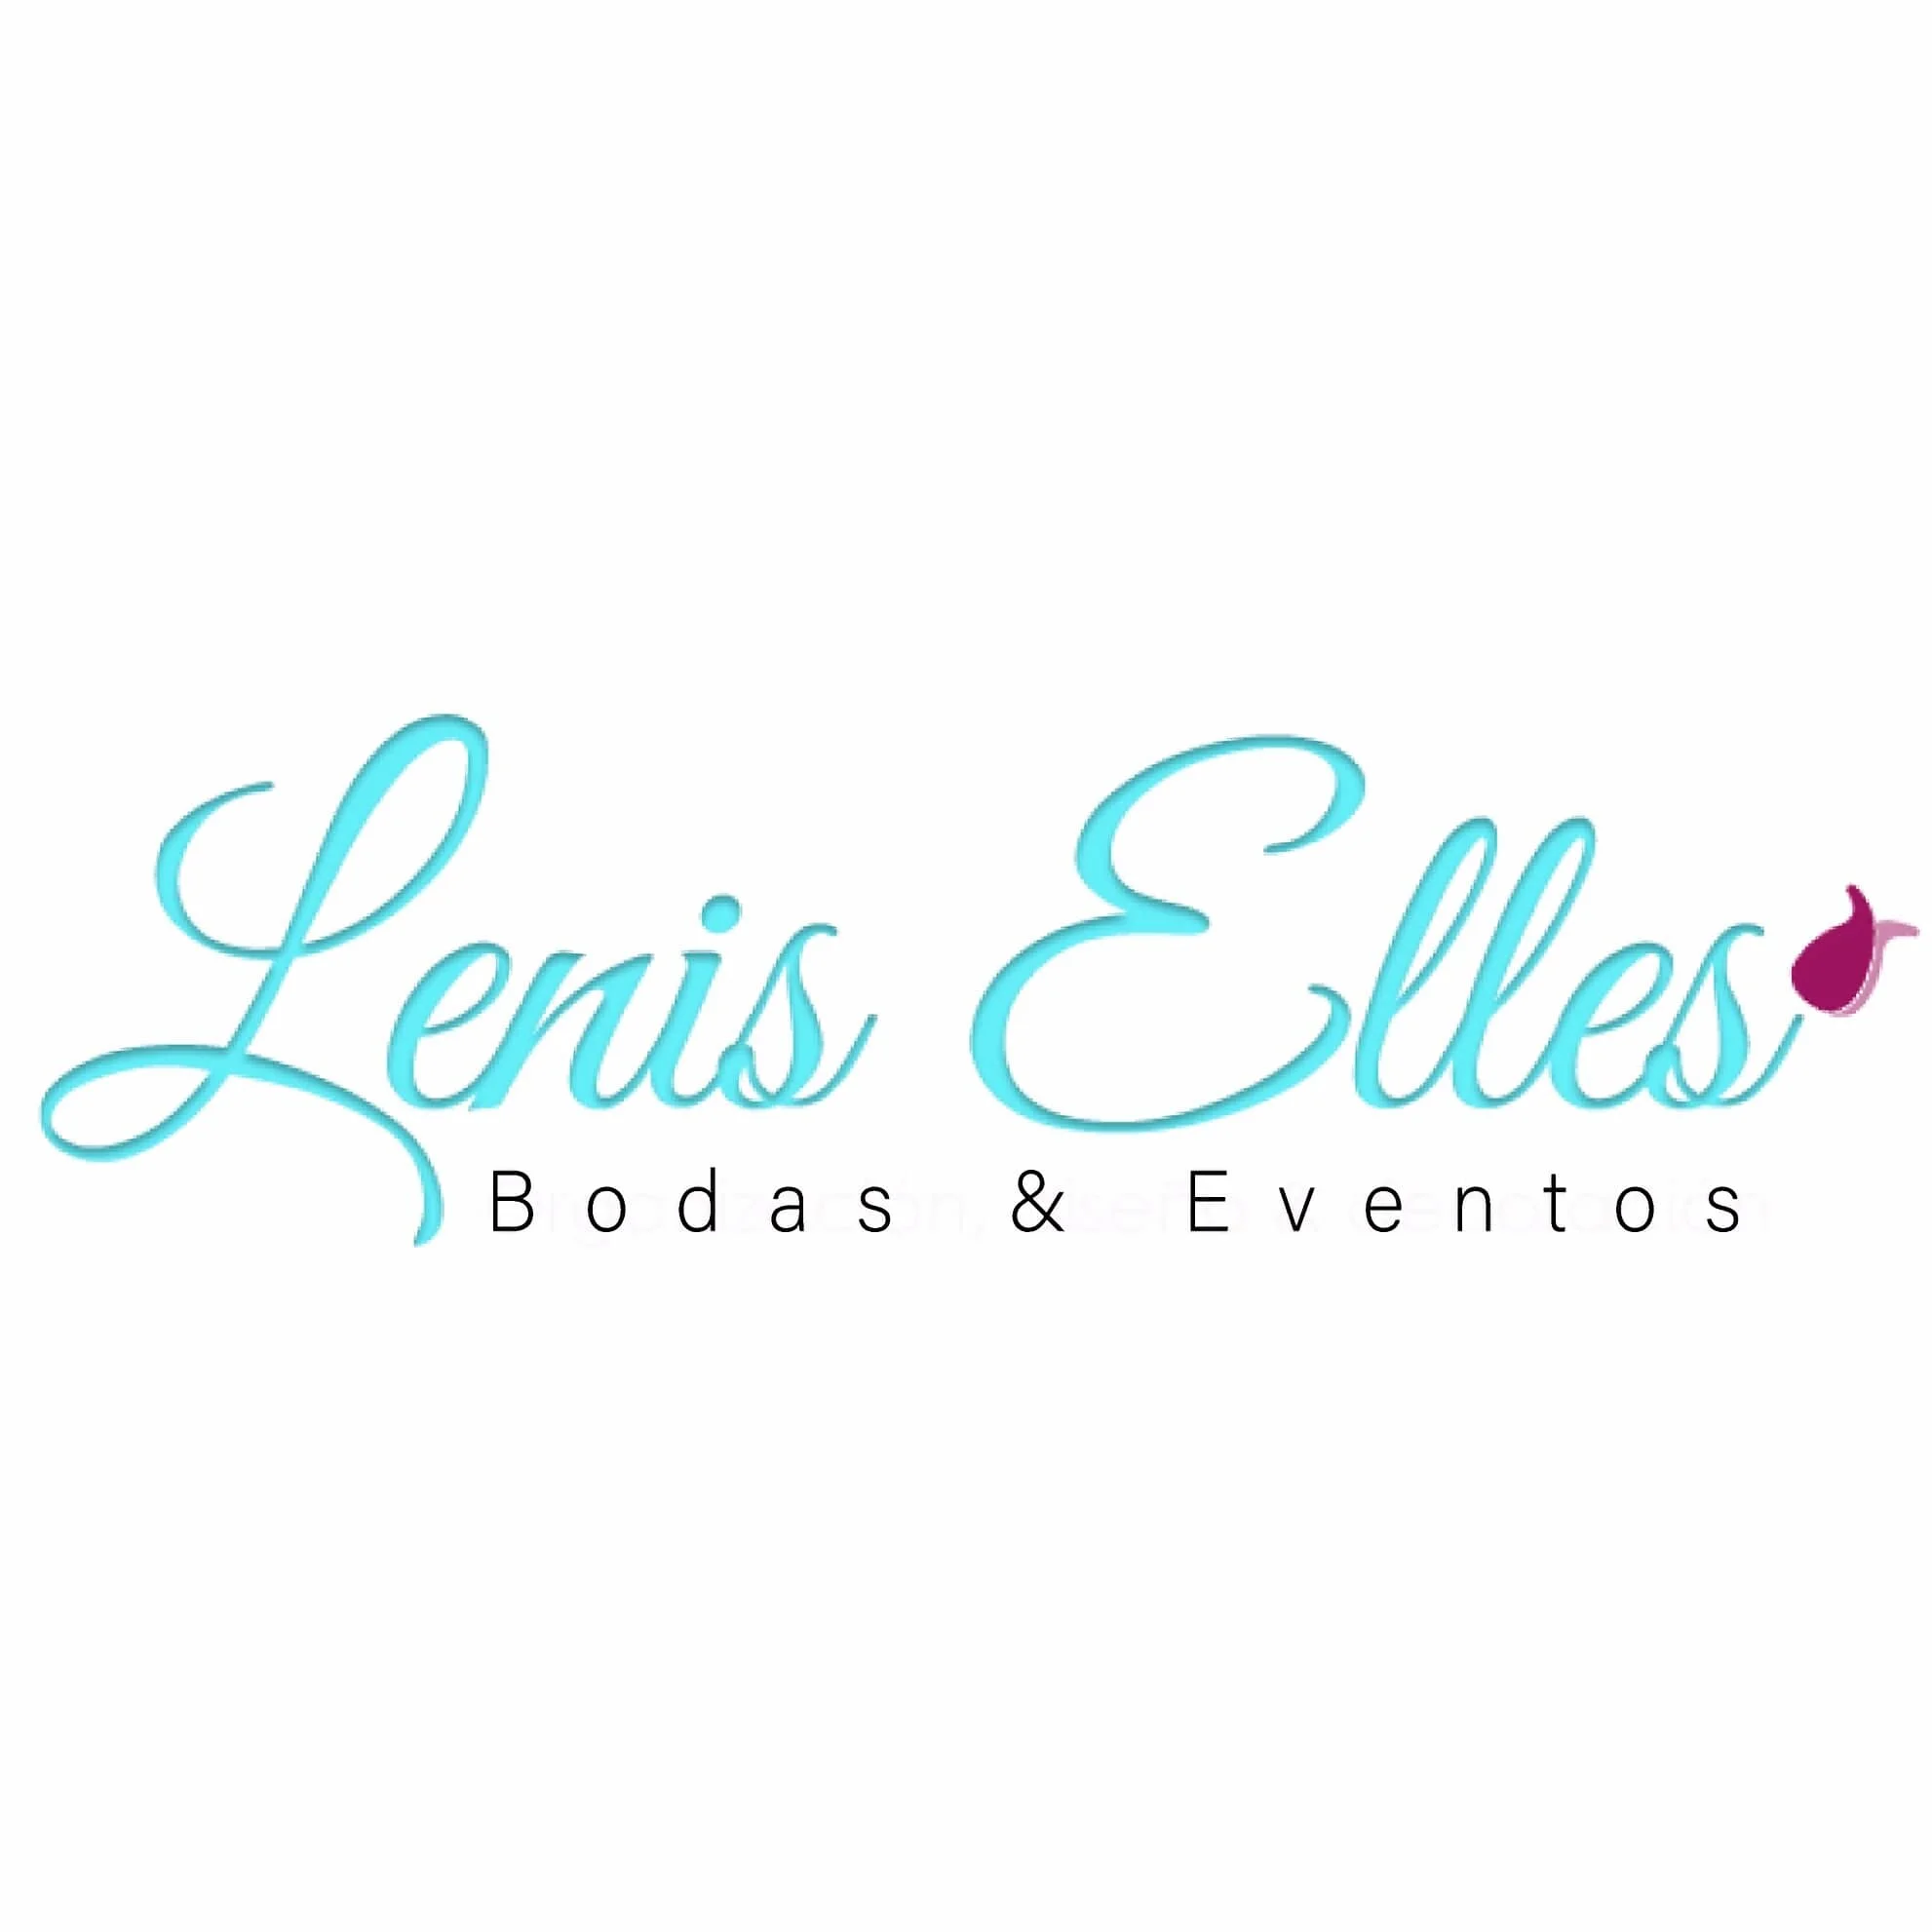 Lenis Elles Bodas & Eventos-5299